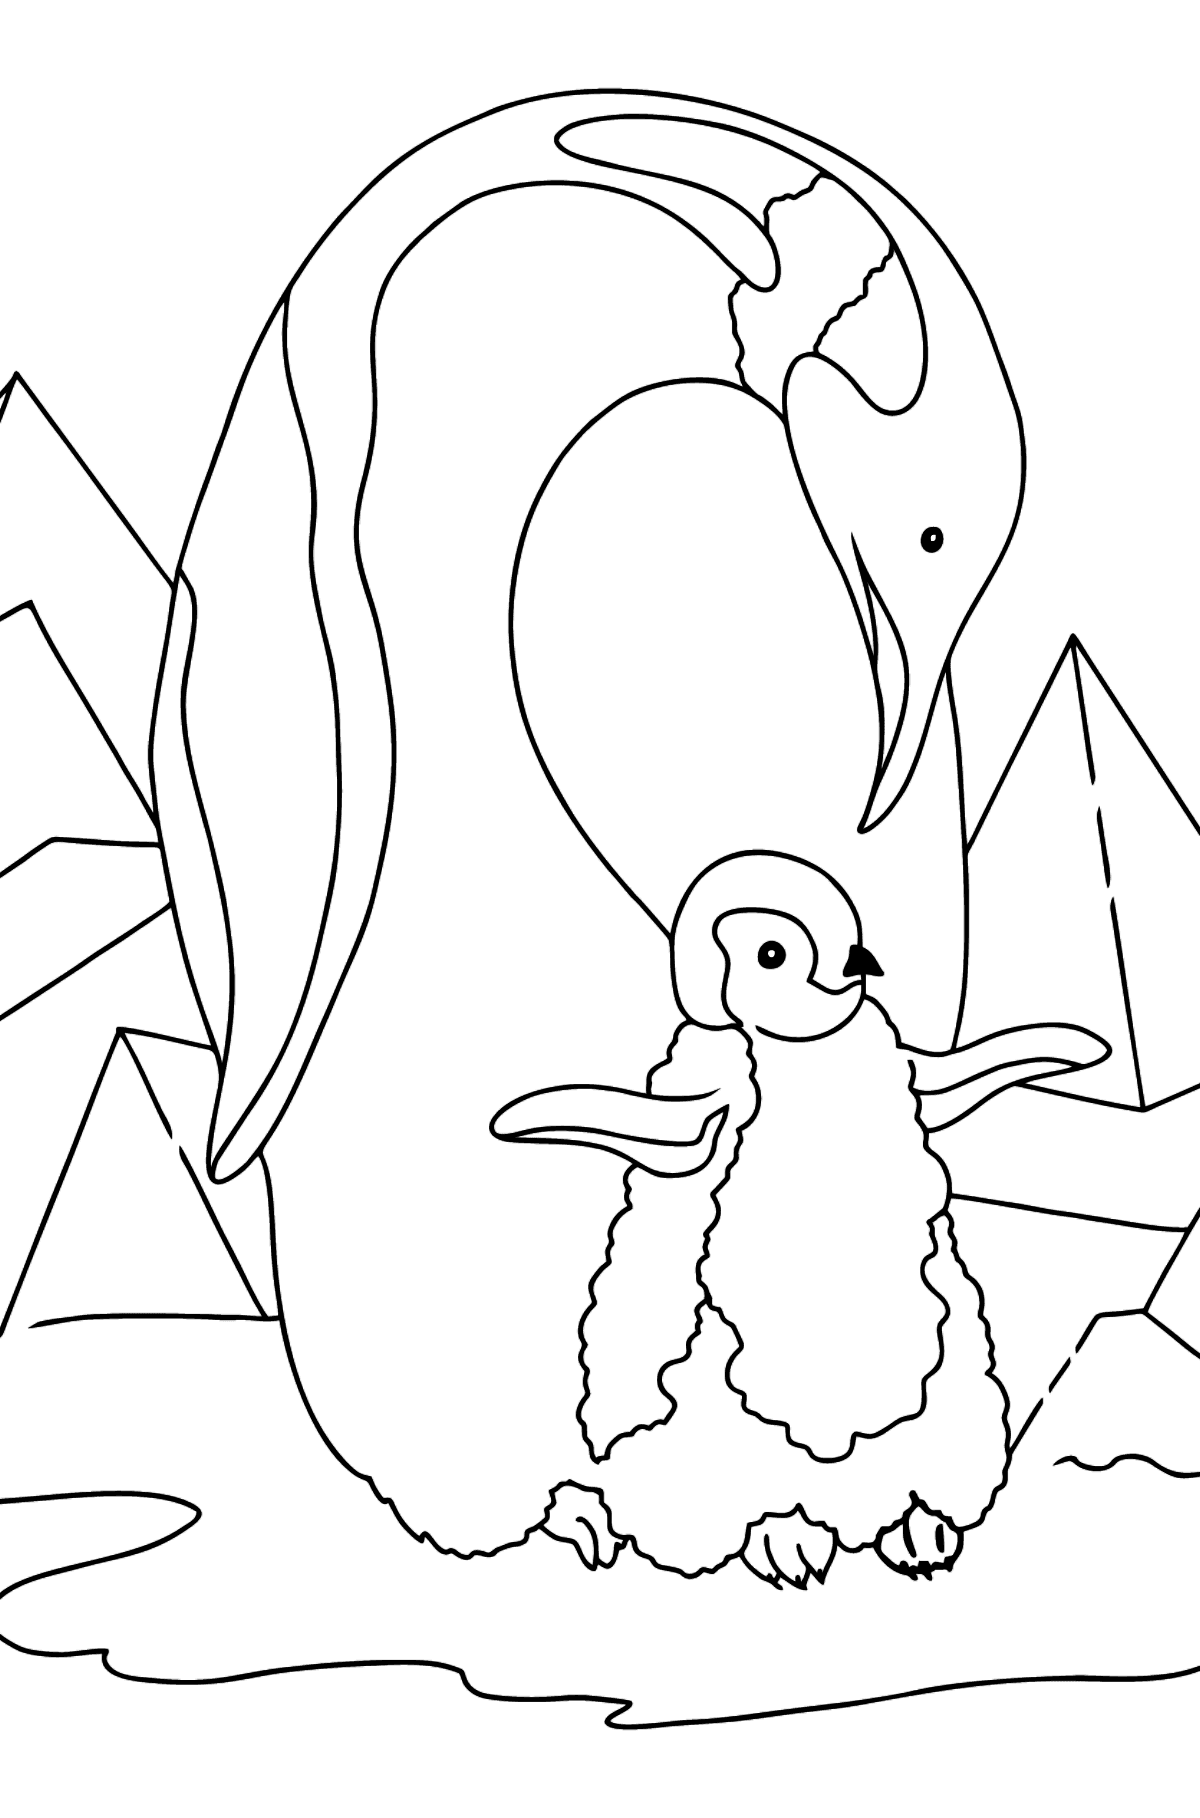 Dibujo para Colorear - Un Pingüino con su Bebé - Dibujos para Colorear para Niños